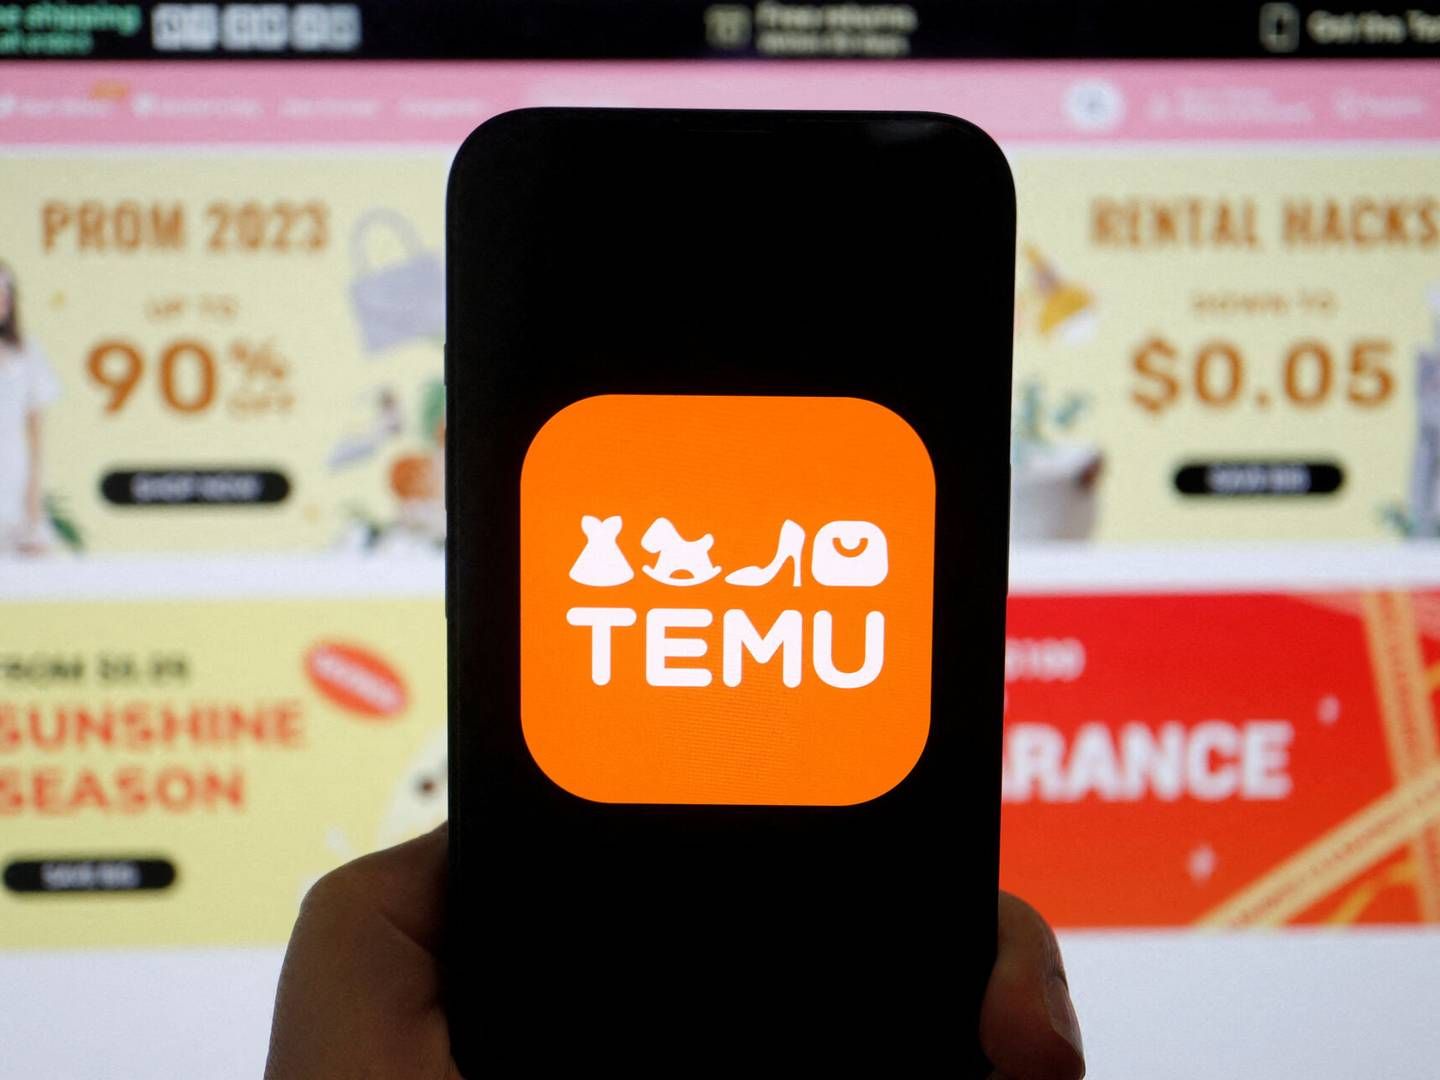 Den kinesiske handelsplatform Temu, der entrerede på det danske marked for blot otte måneder siden, er blandt de mest populære udenlandske webshops. | Foto: Florence Lo/Reuters/Ritzau Scanpix